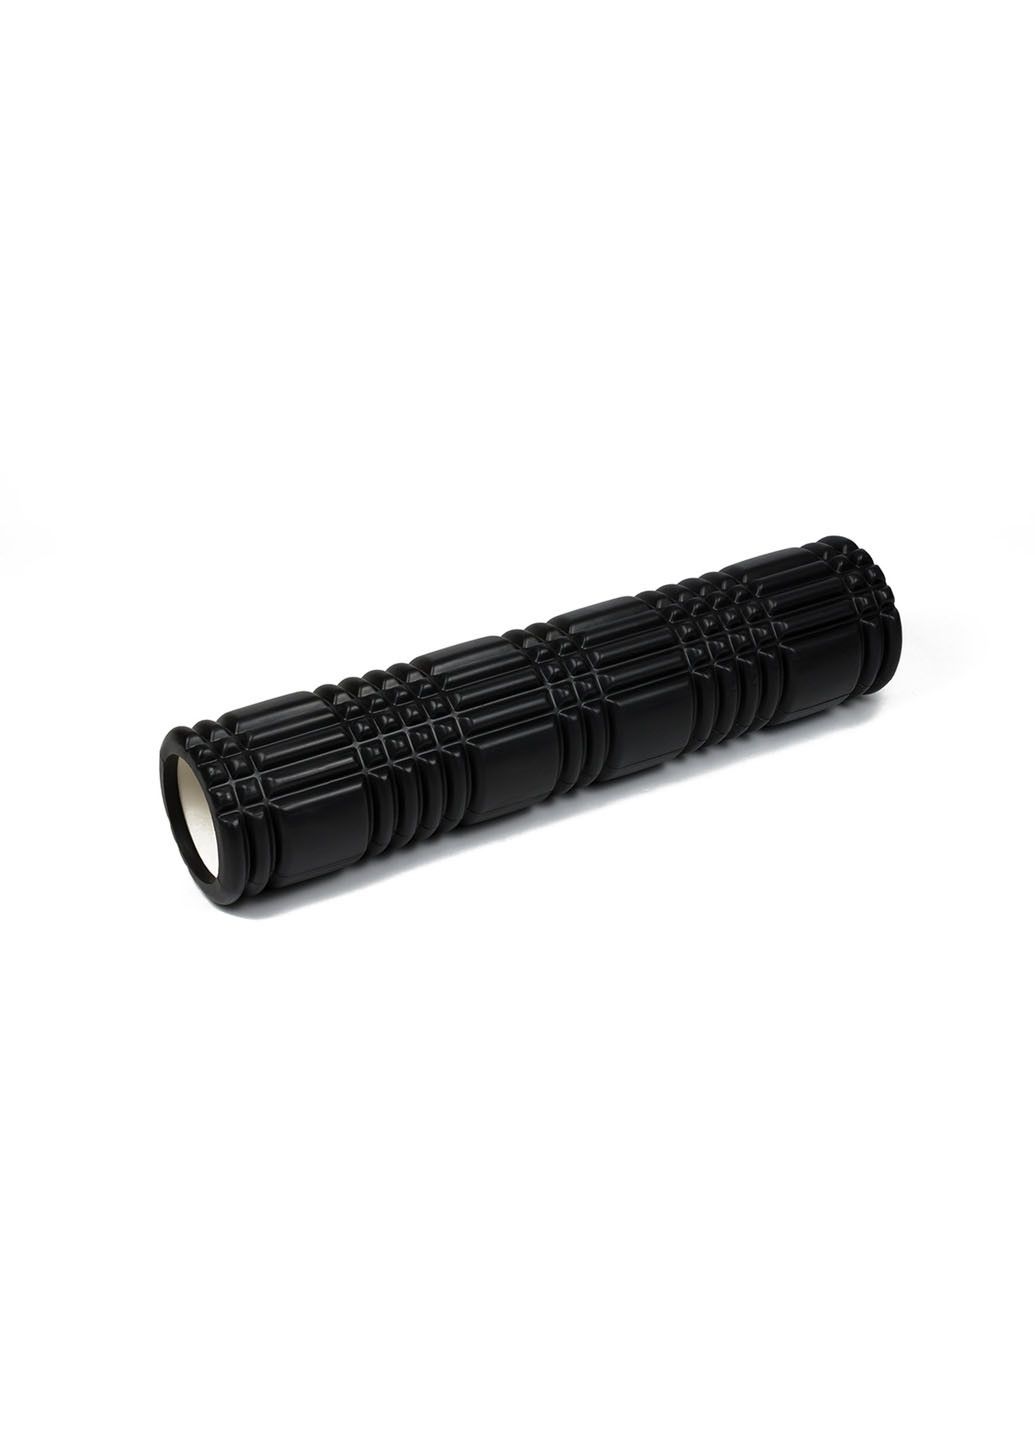 Масажний ролик Grid Roller v3.0 60 см чорний (ролер, валик, циліндр для йоги, пілатесу і масажу) EasyFit (237657540)